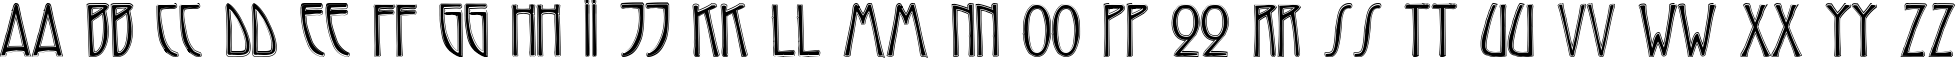 Пример написания английского алфавита шрифтом Reynold Contour